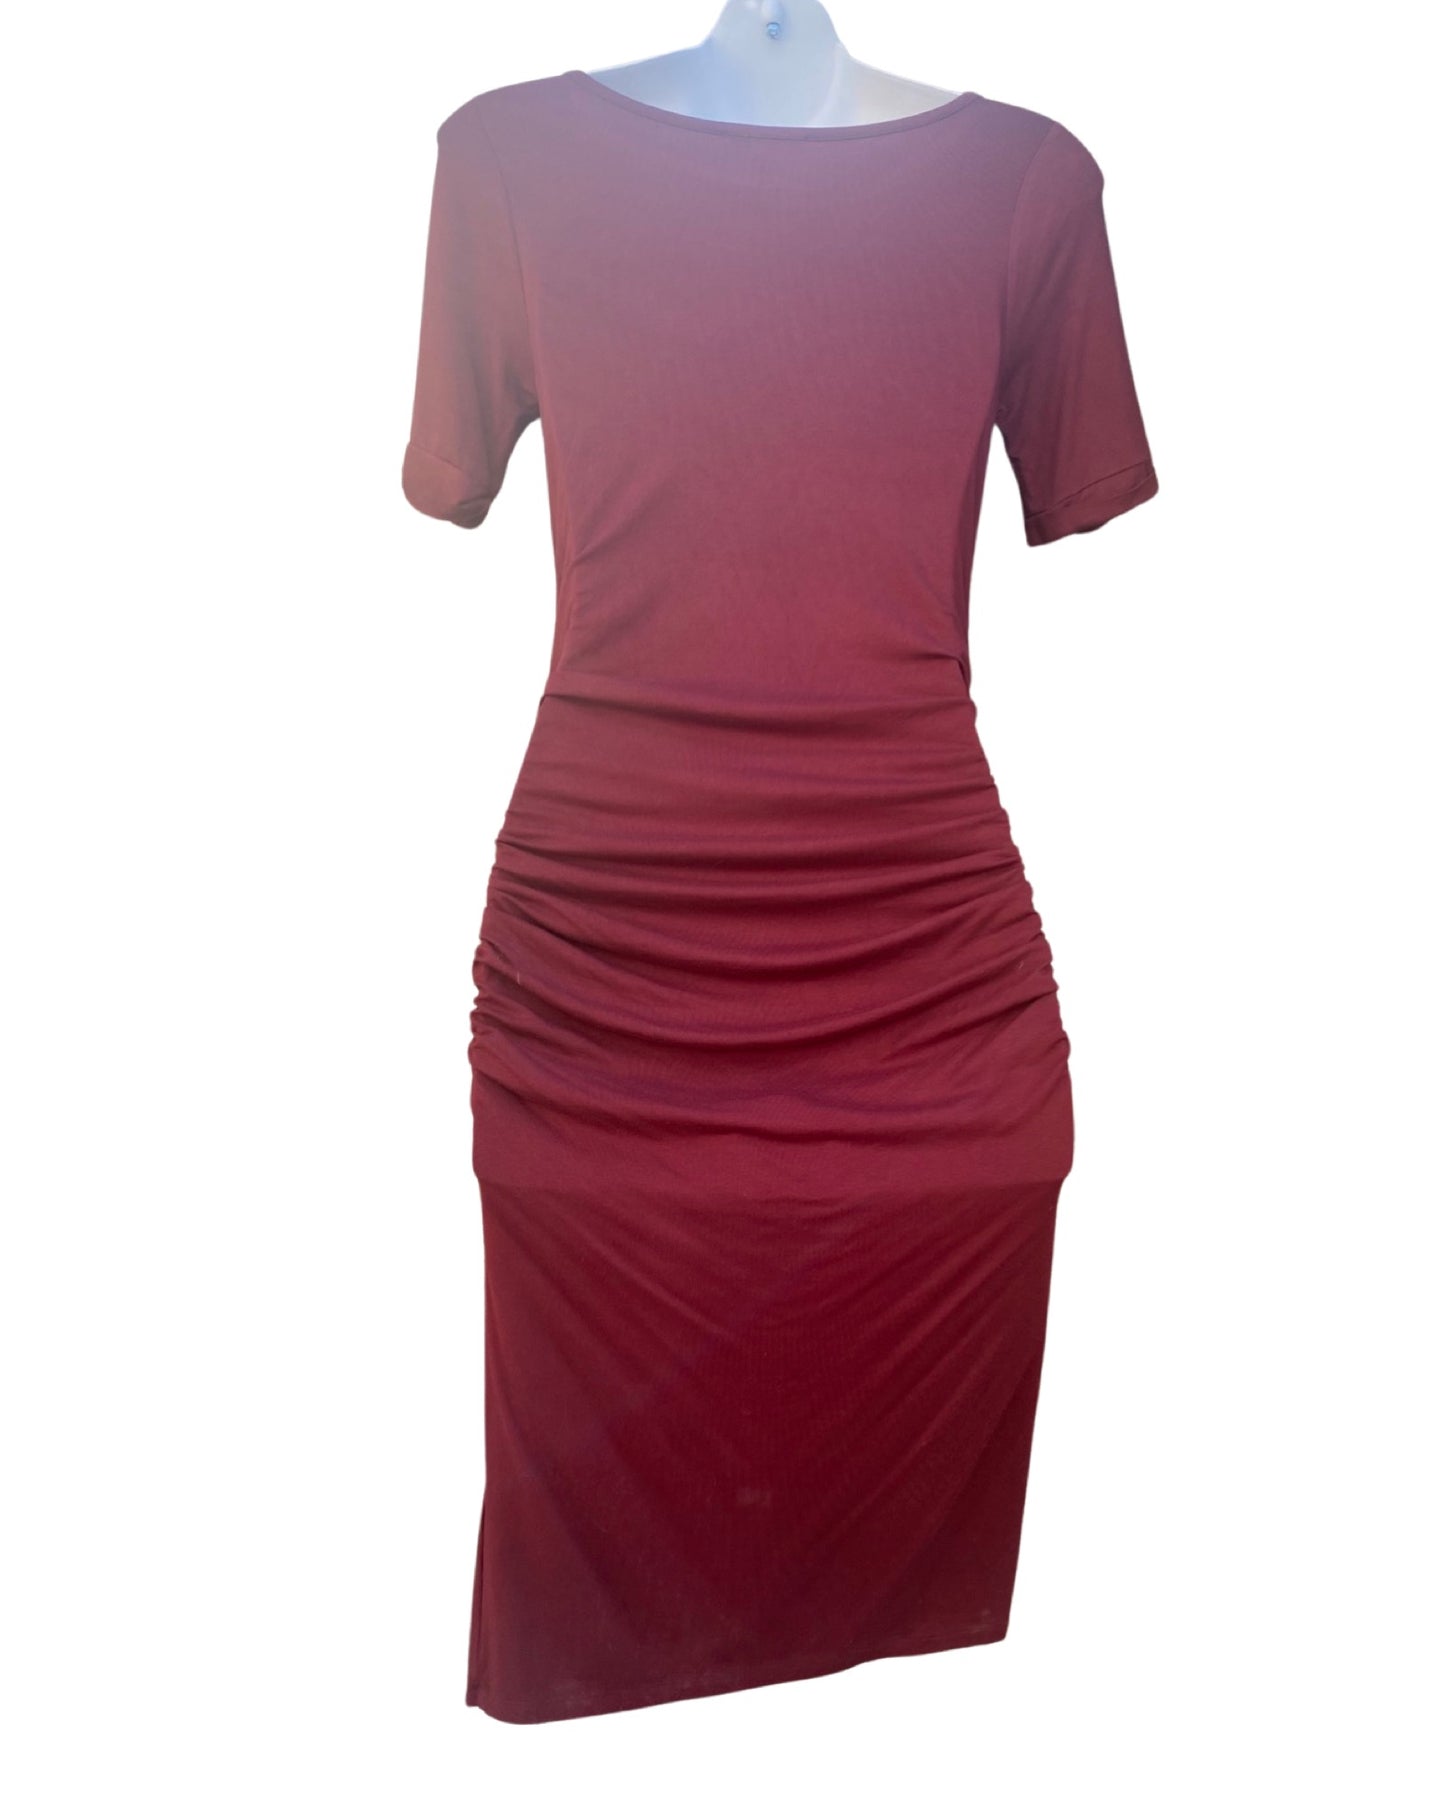 Isabella Oliver burgundy jersey dress (size 10)